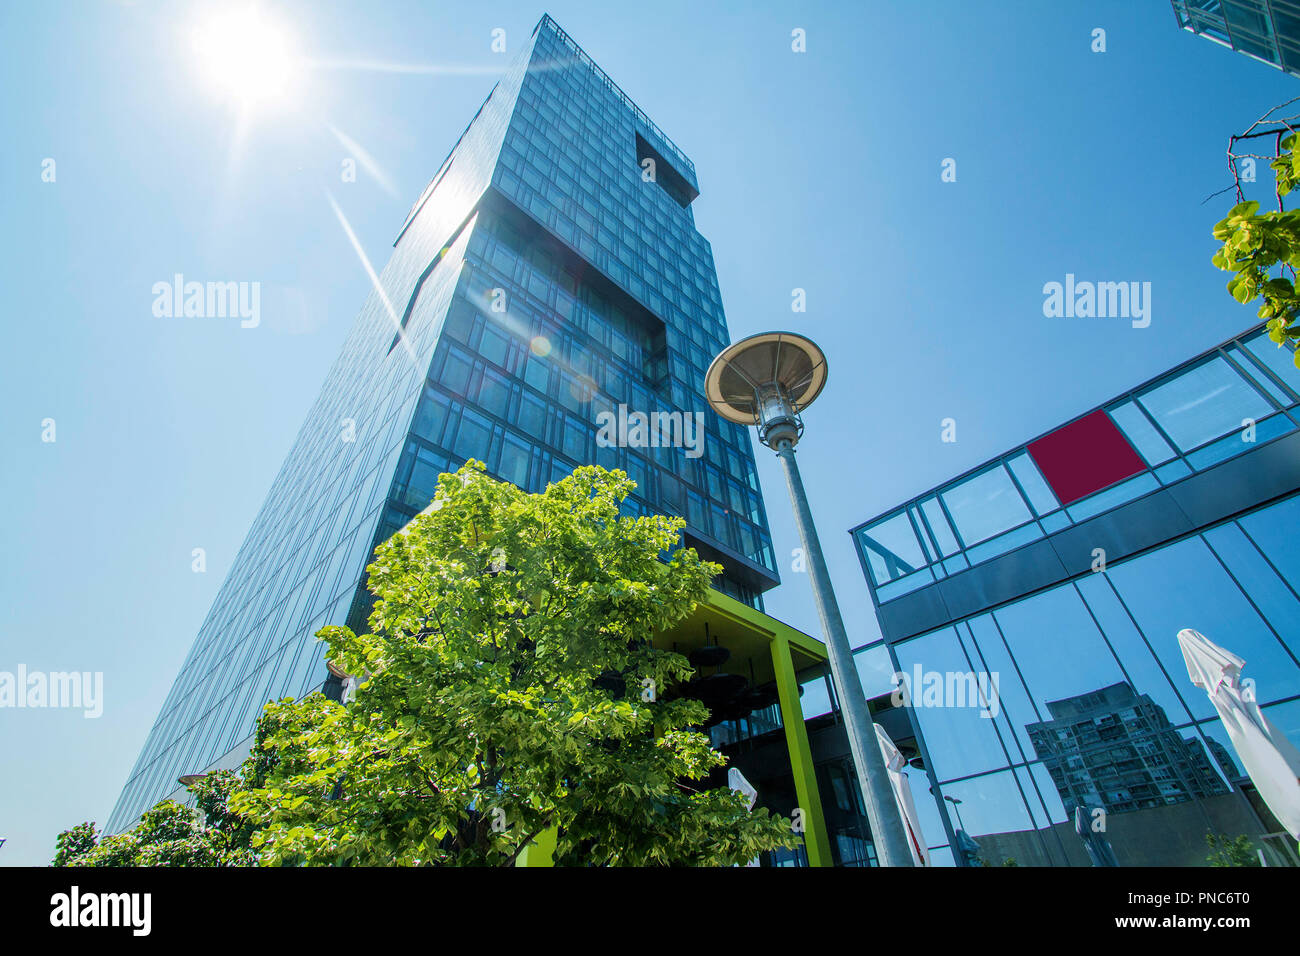 Zagreb, Croatia, modern business tower in Vukovarska street in Zagreb, Croatia, headquarter of Zagreb stock exchange Stock Photo